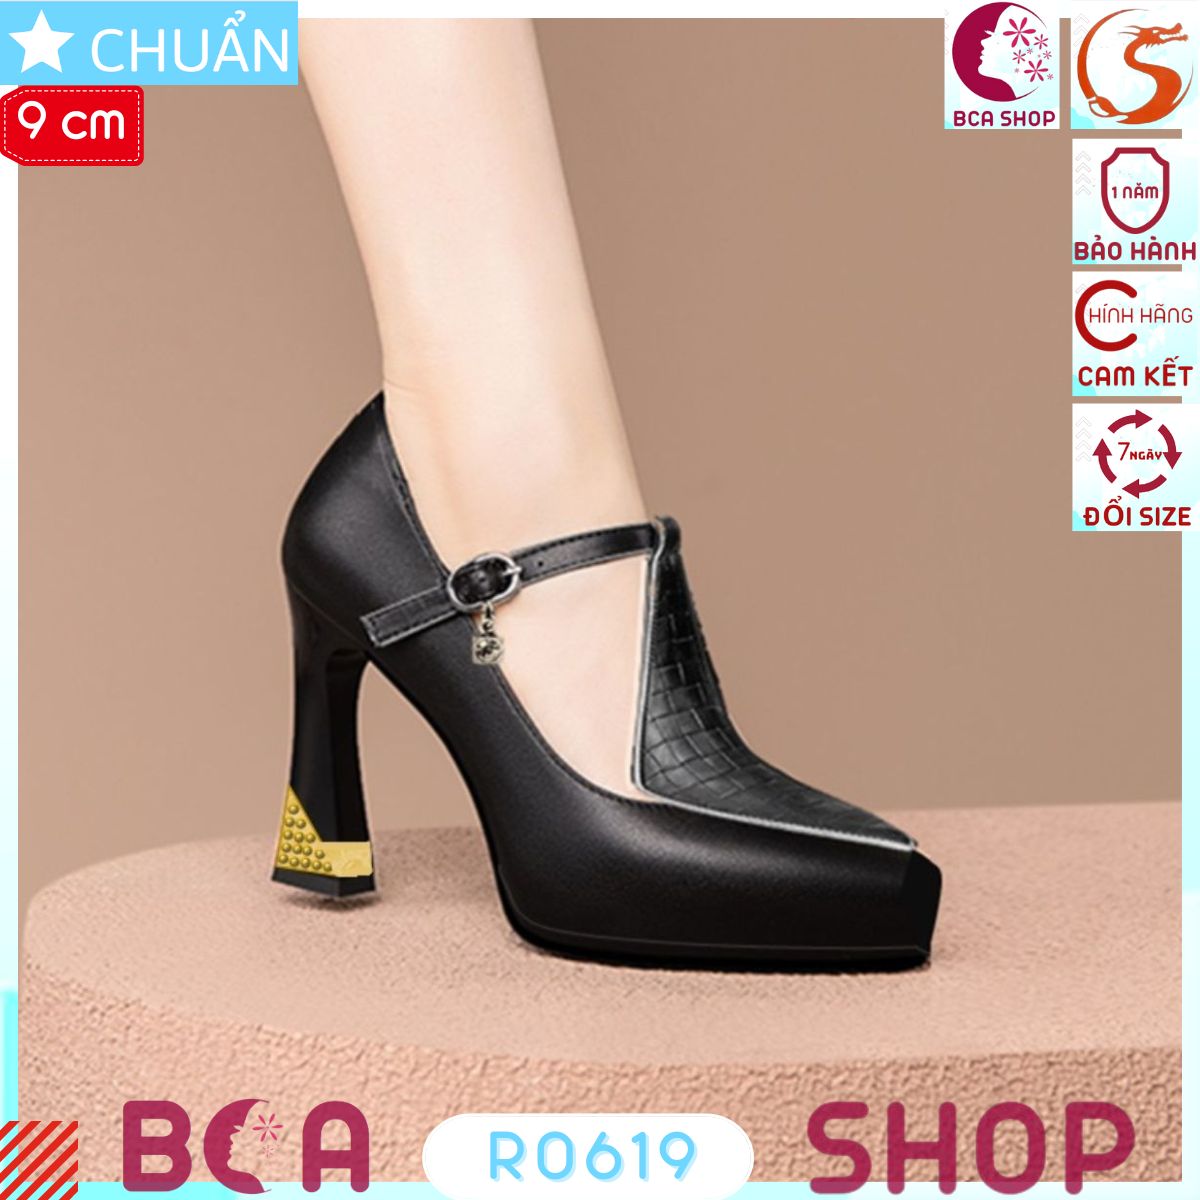 Giày nữ màu đen gót cao bọc kim loại 9p RO619 ROSATA tại BCASHOP sang trọng lại tôn dáng, tôn chân và tôn chiều cao